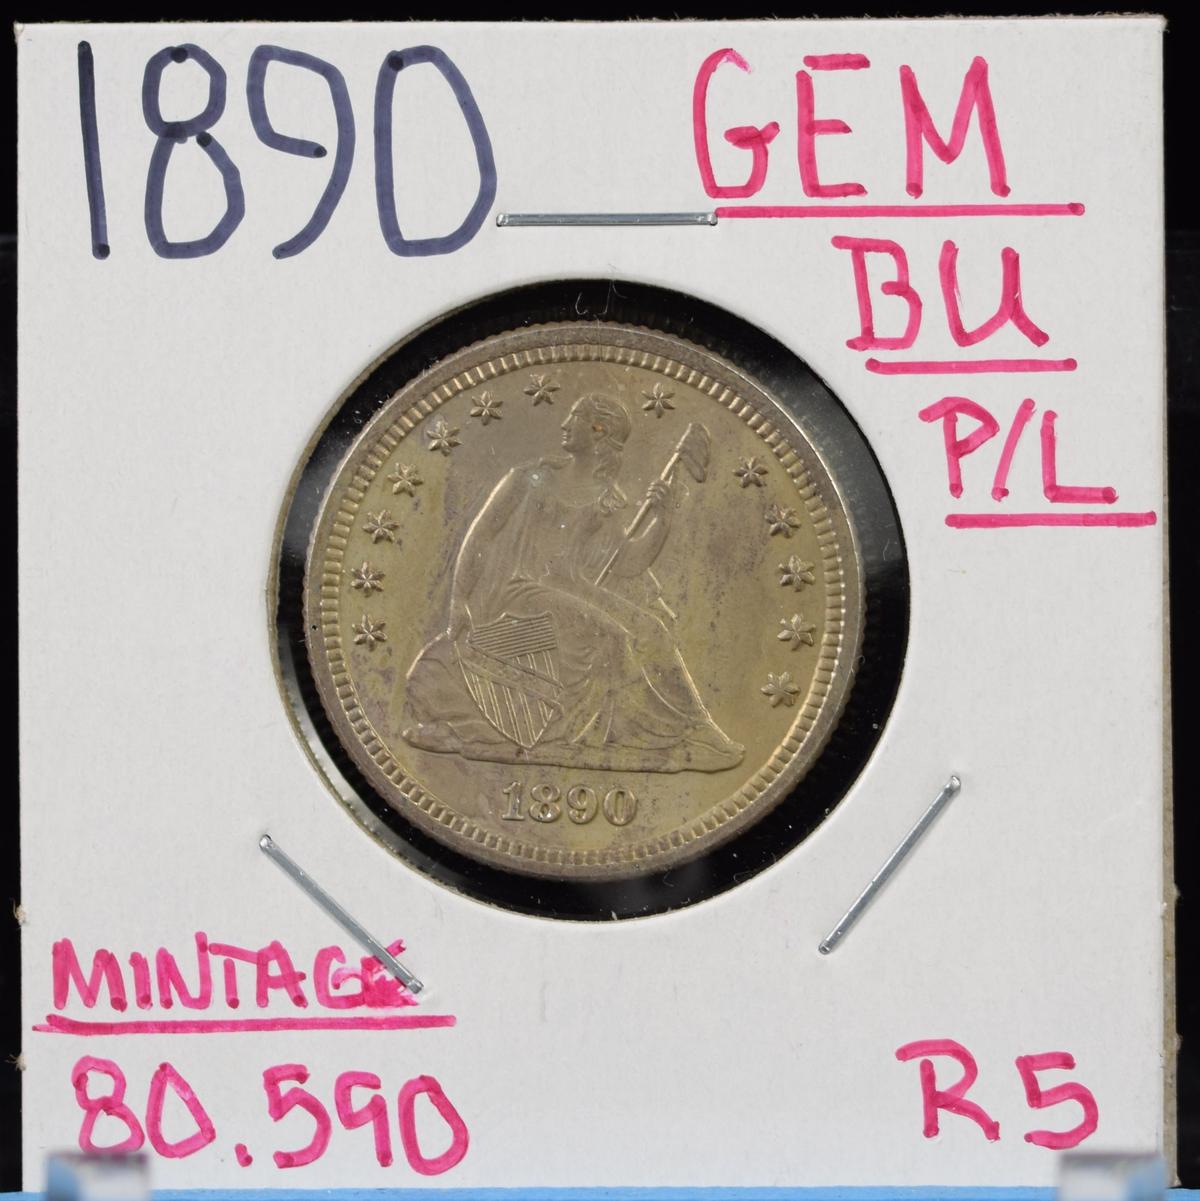 1890 Seated Quarter GEM BU PL Mintage 80,590